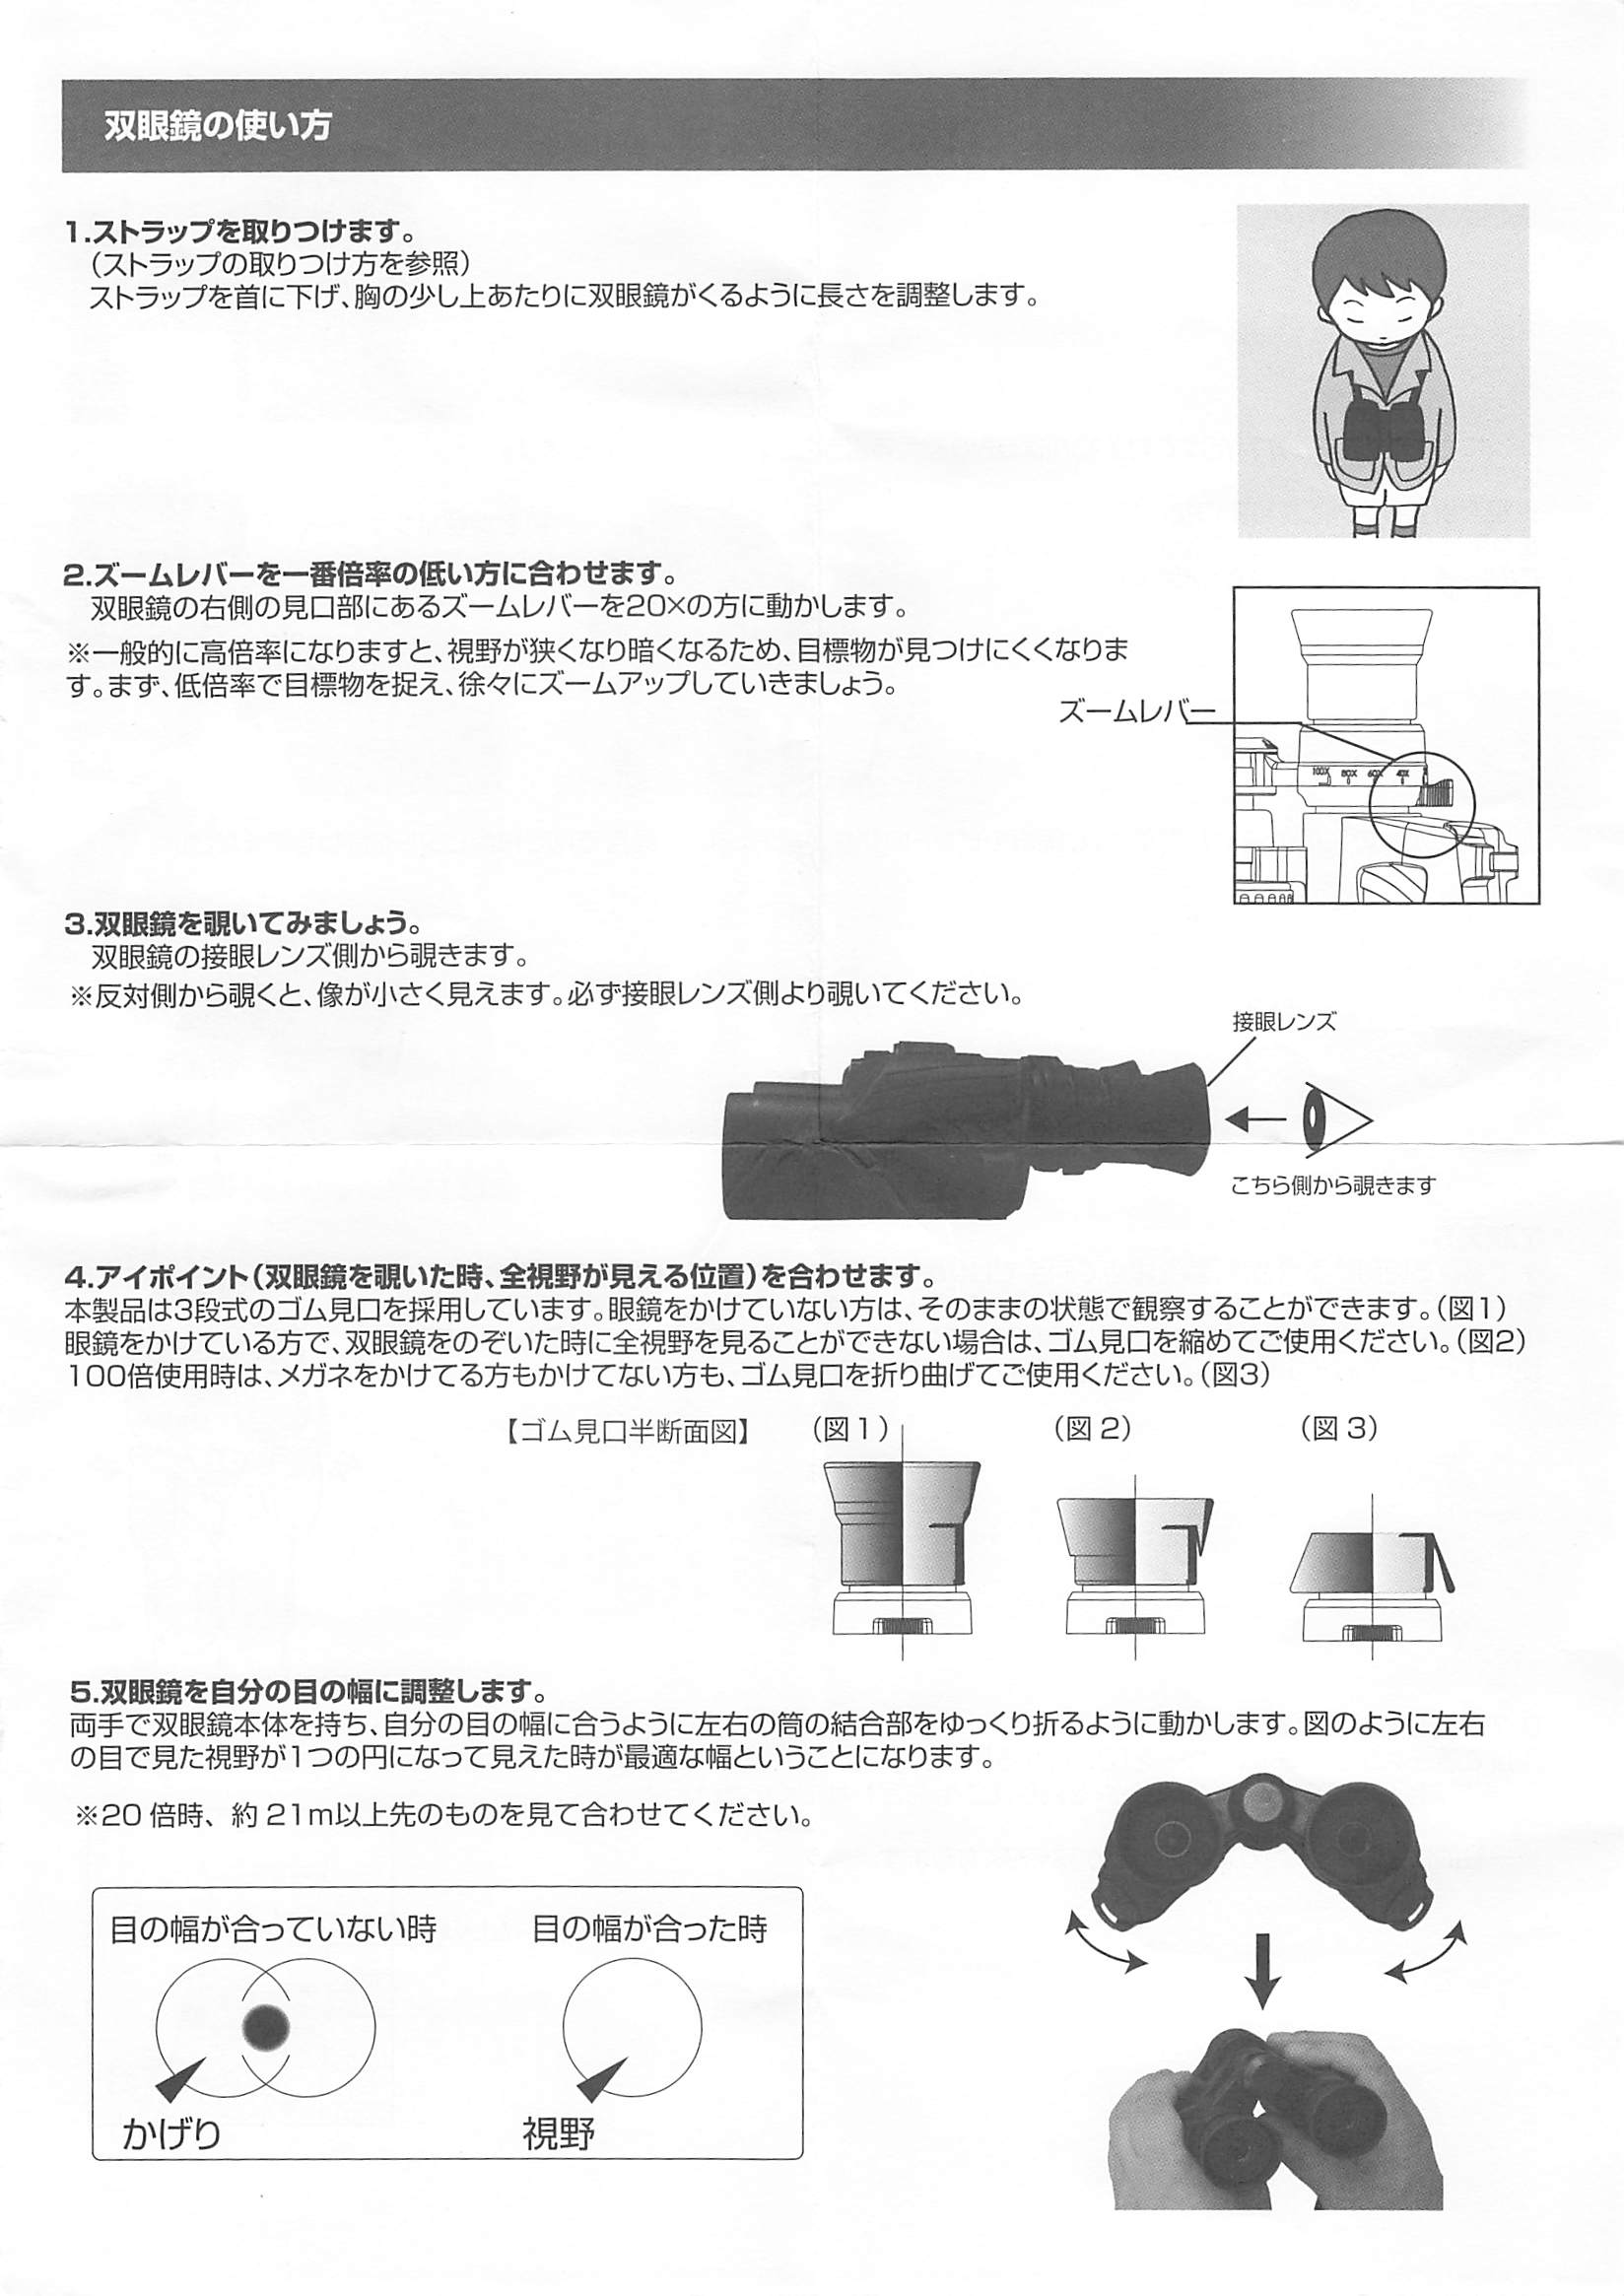 値頃 Kenko 双眼鏡 SG-Z 20-100×30 FMC